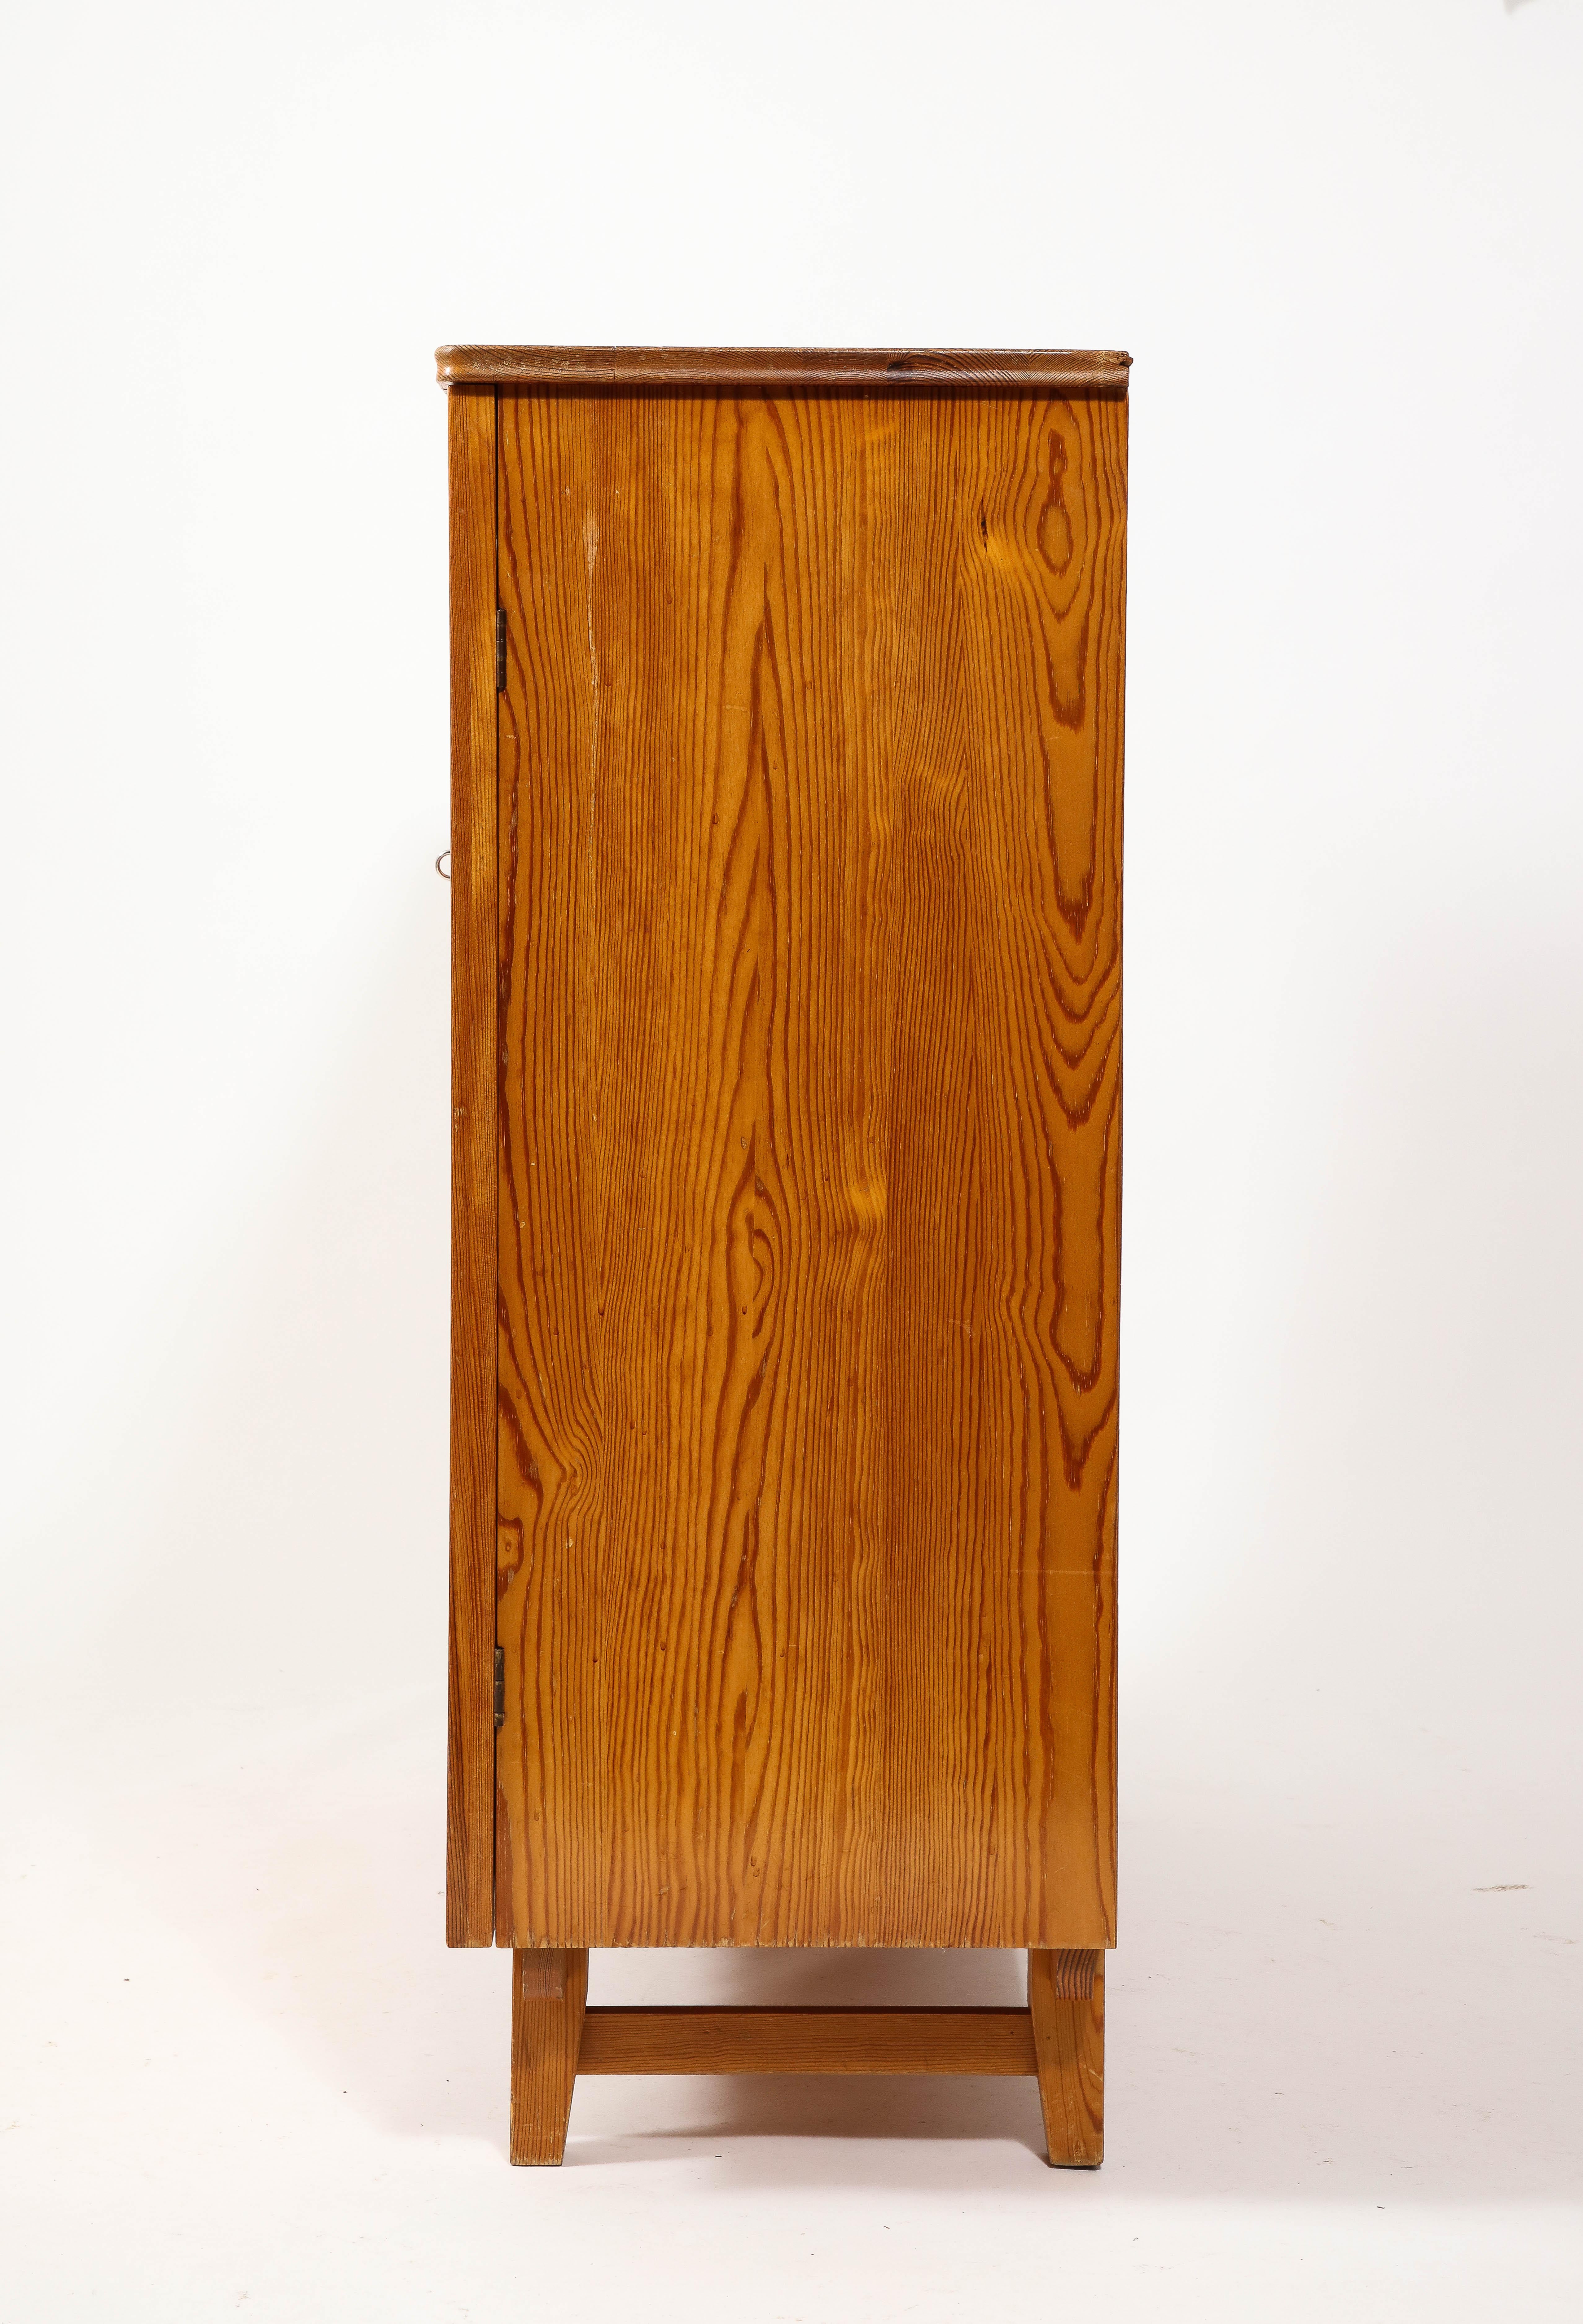 20th Century Göran Malmvall Svensk Stamped Modernist Rustic Pine Cabinet, Sweden 1950's For Sale